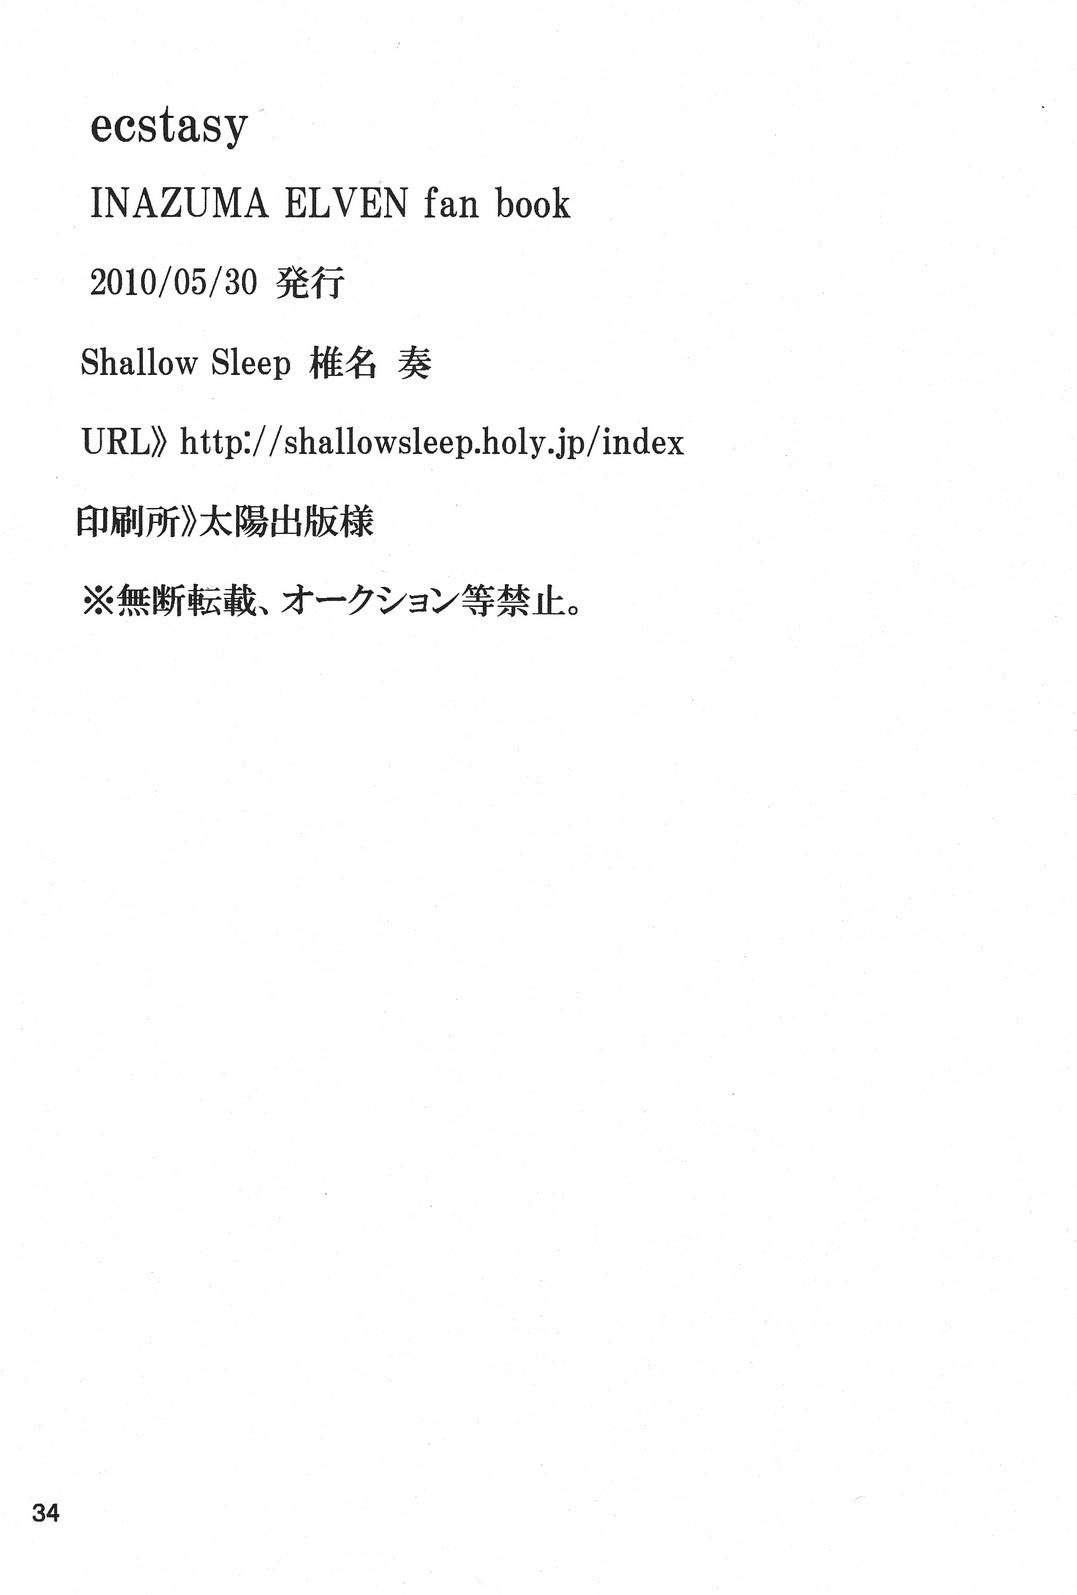 [Shallow Sleep (椎名奏)] ecstasy (イナズマイレブン)